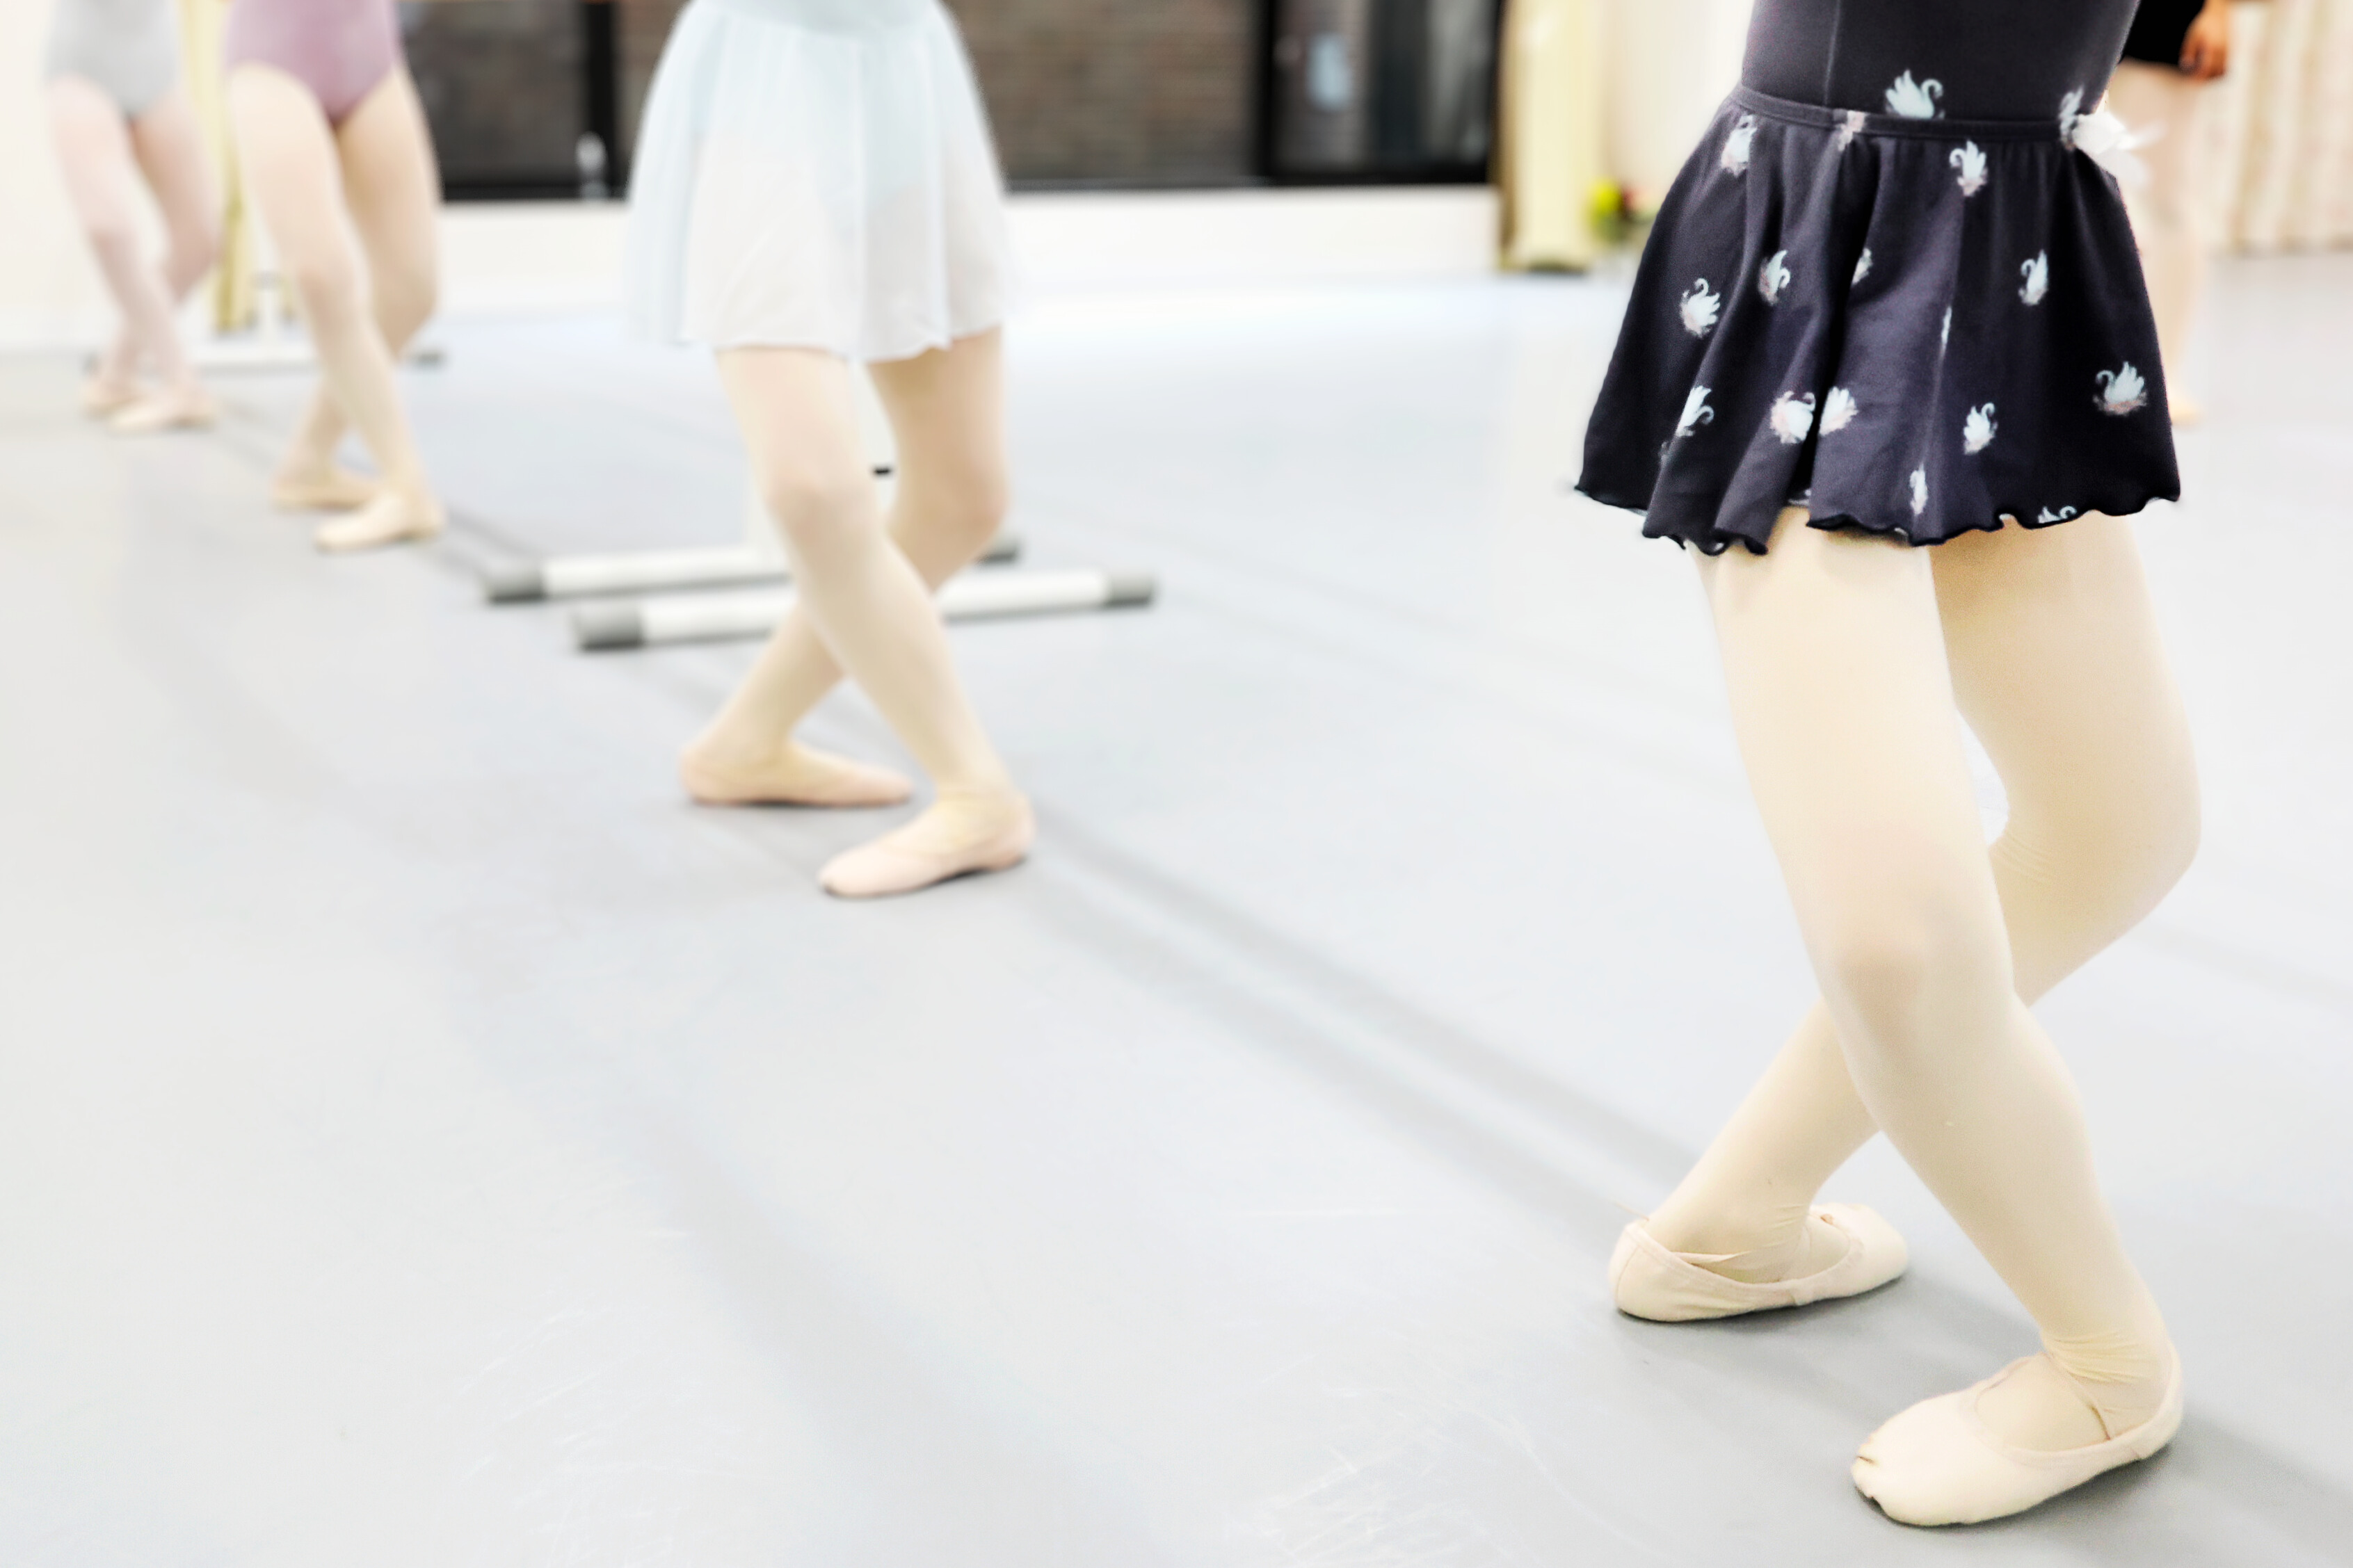 ASAMI KUSHIKATA ballet studio